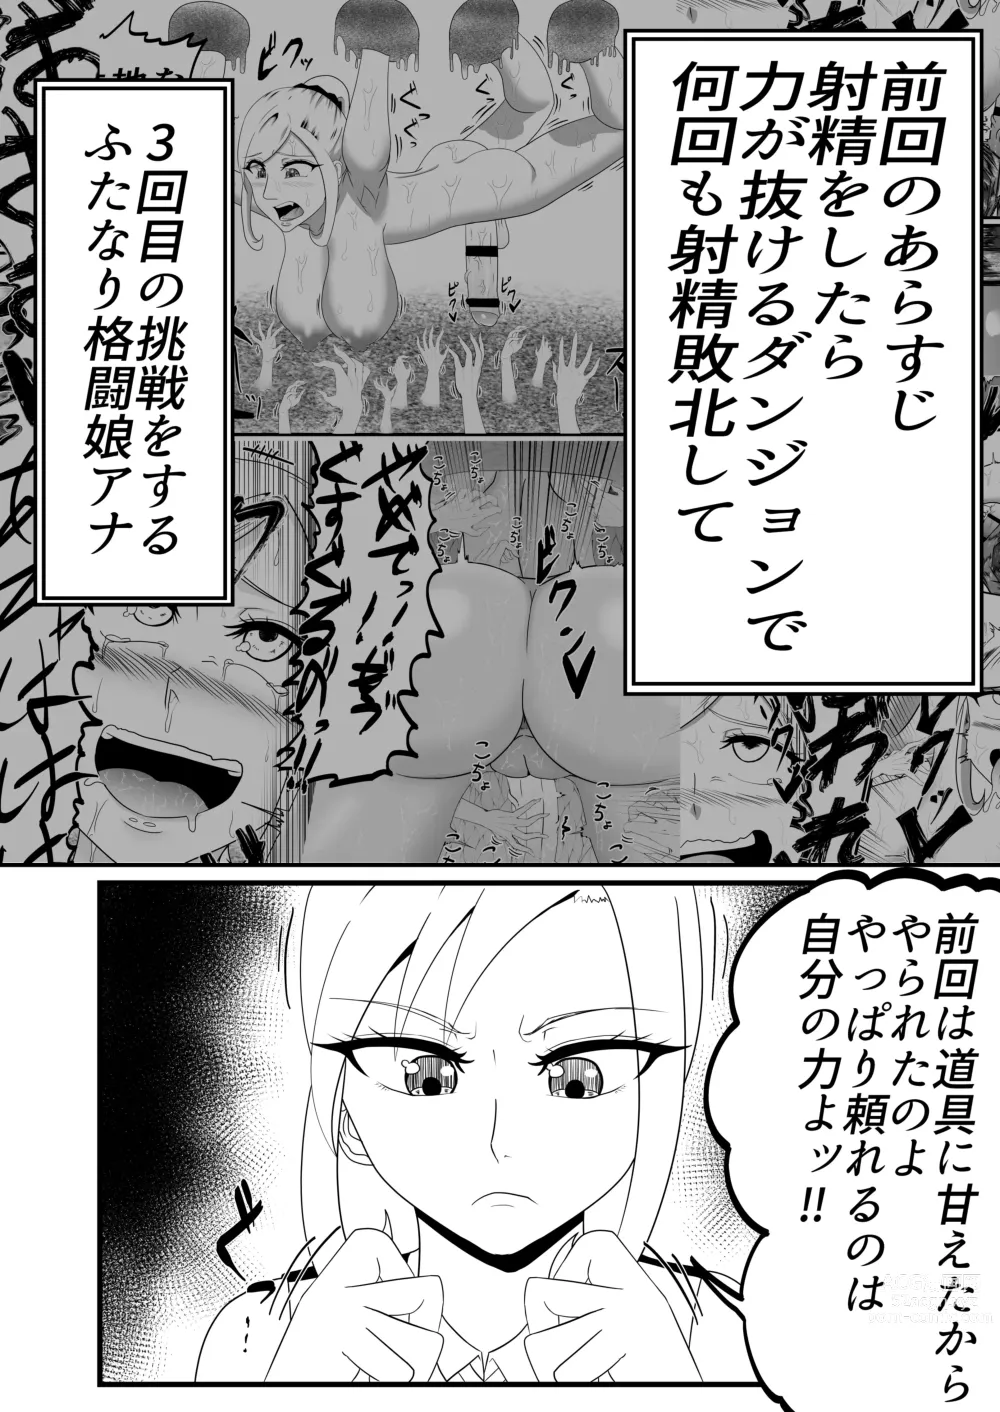 Page 4 of doujinshi Shasei Gaman Kusuguri Ero Trap Dungeon Shasei Suru Tabi ni Chikara ga Nukete Iku